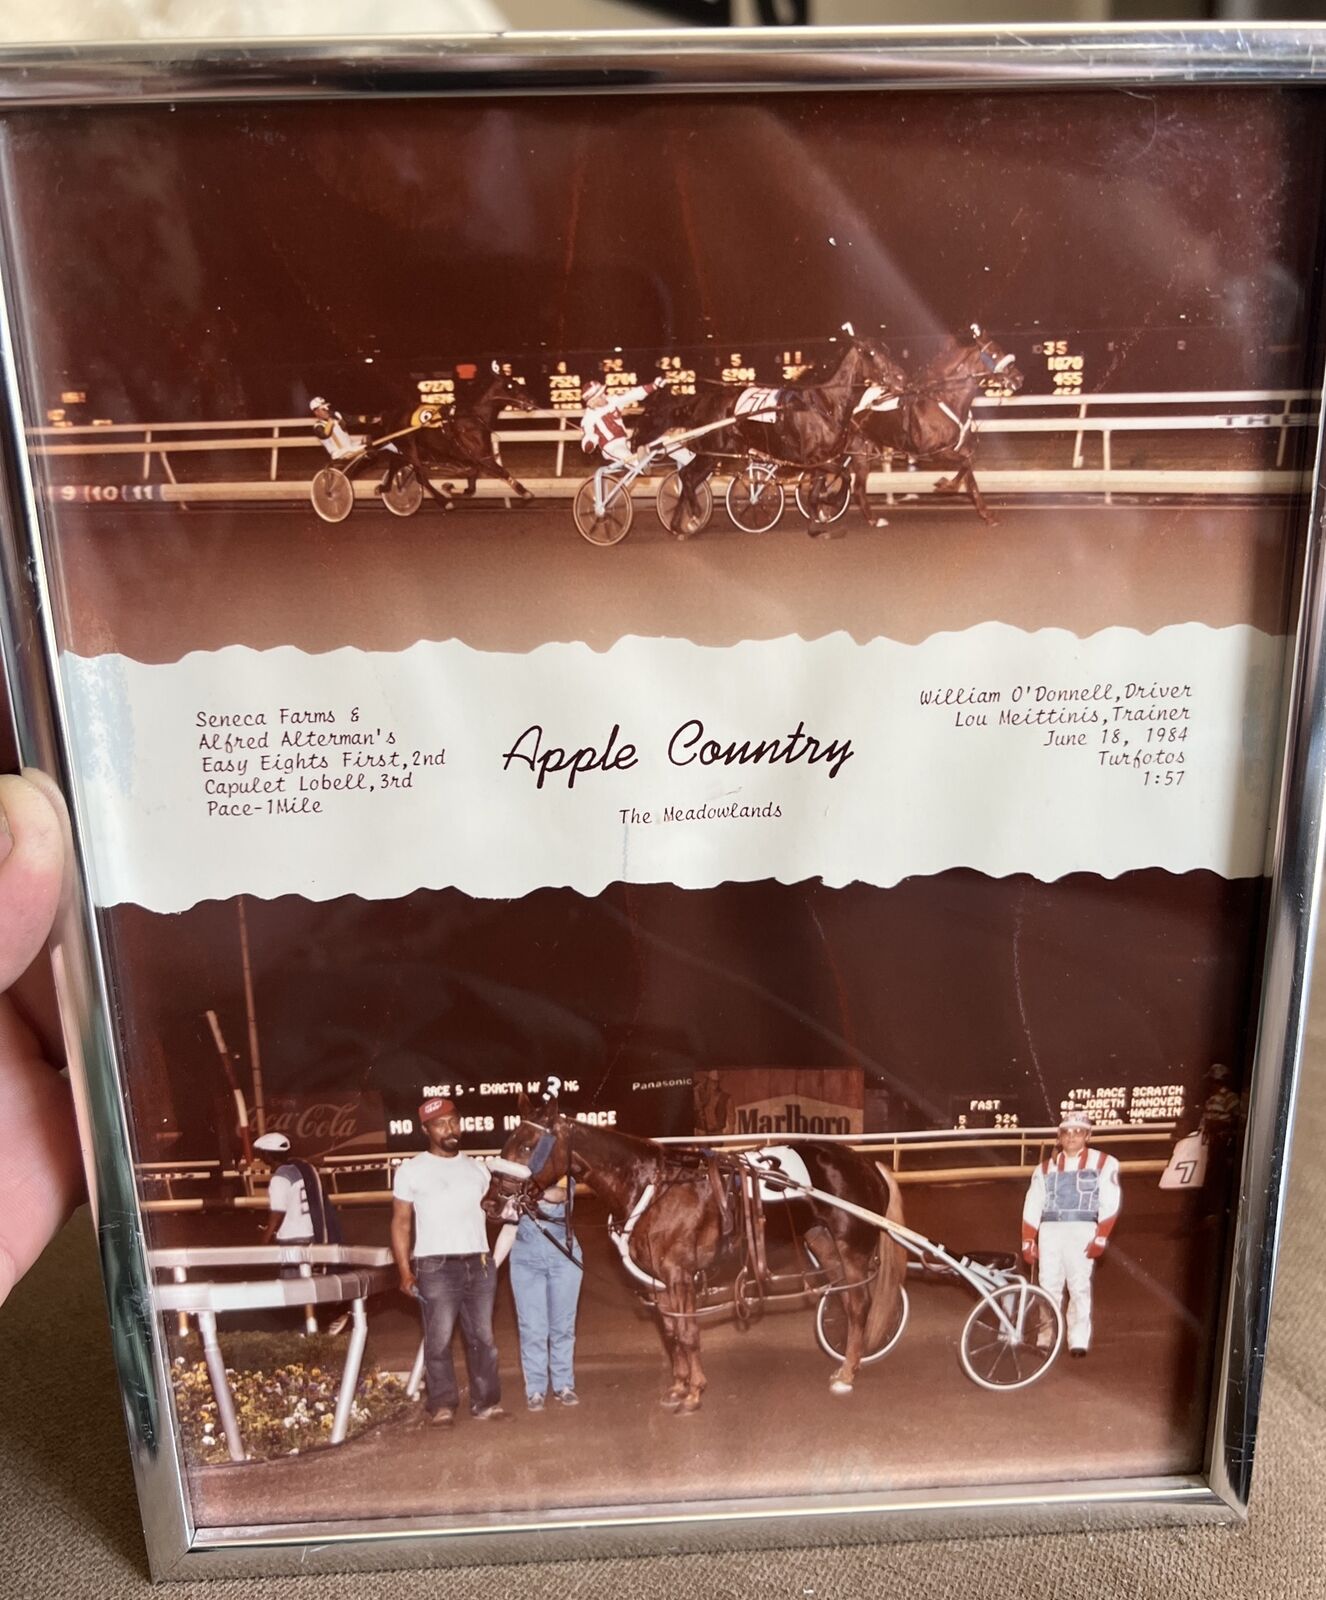 Rare Turfotos Horse Racing June 18, 1984 Photograph The Meadowlands